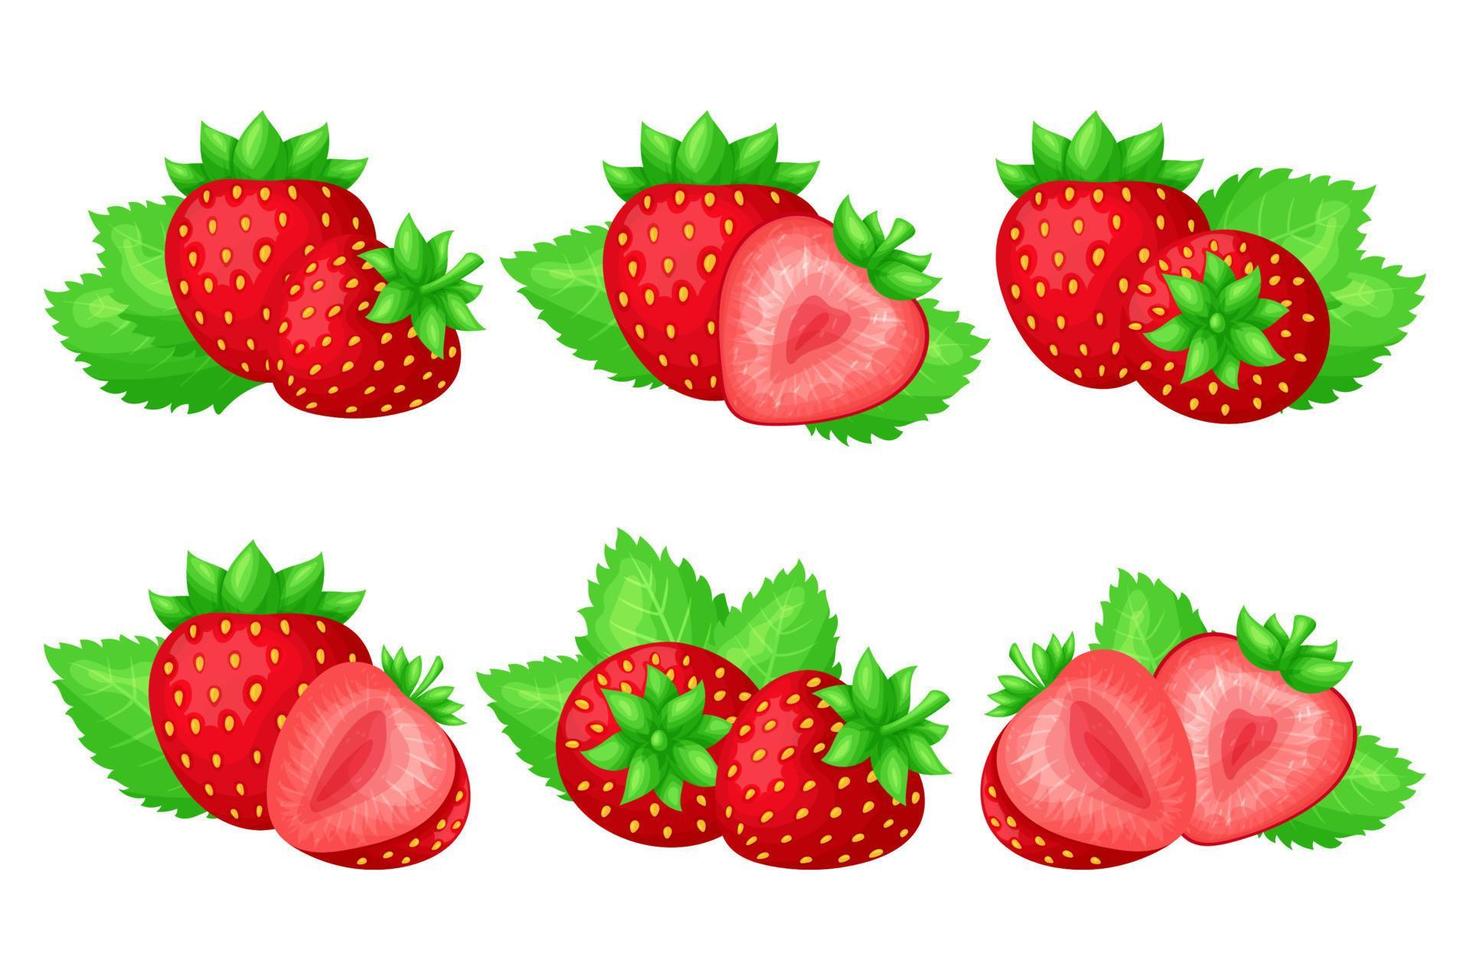 ensemble de fraises juteuses mûres. baies entières et tranches de différentes formes. feuilles vertes. style de dessin animé plat simple et coloré. illustration vectorielle isolée. vecteur